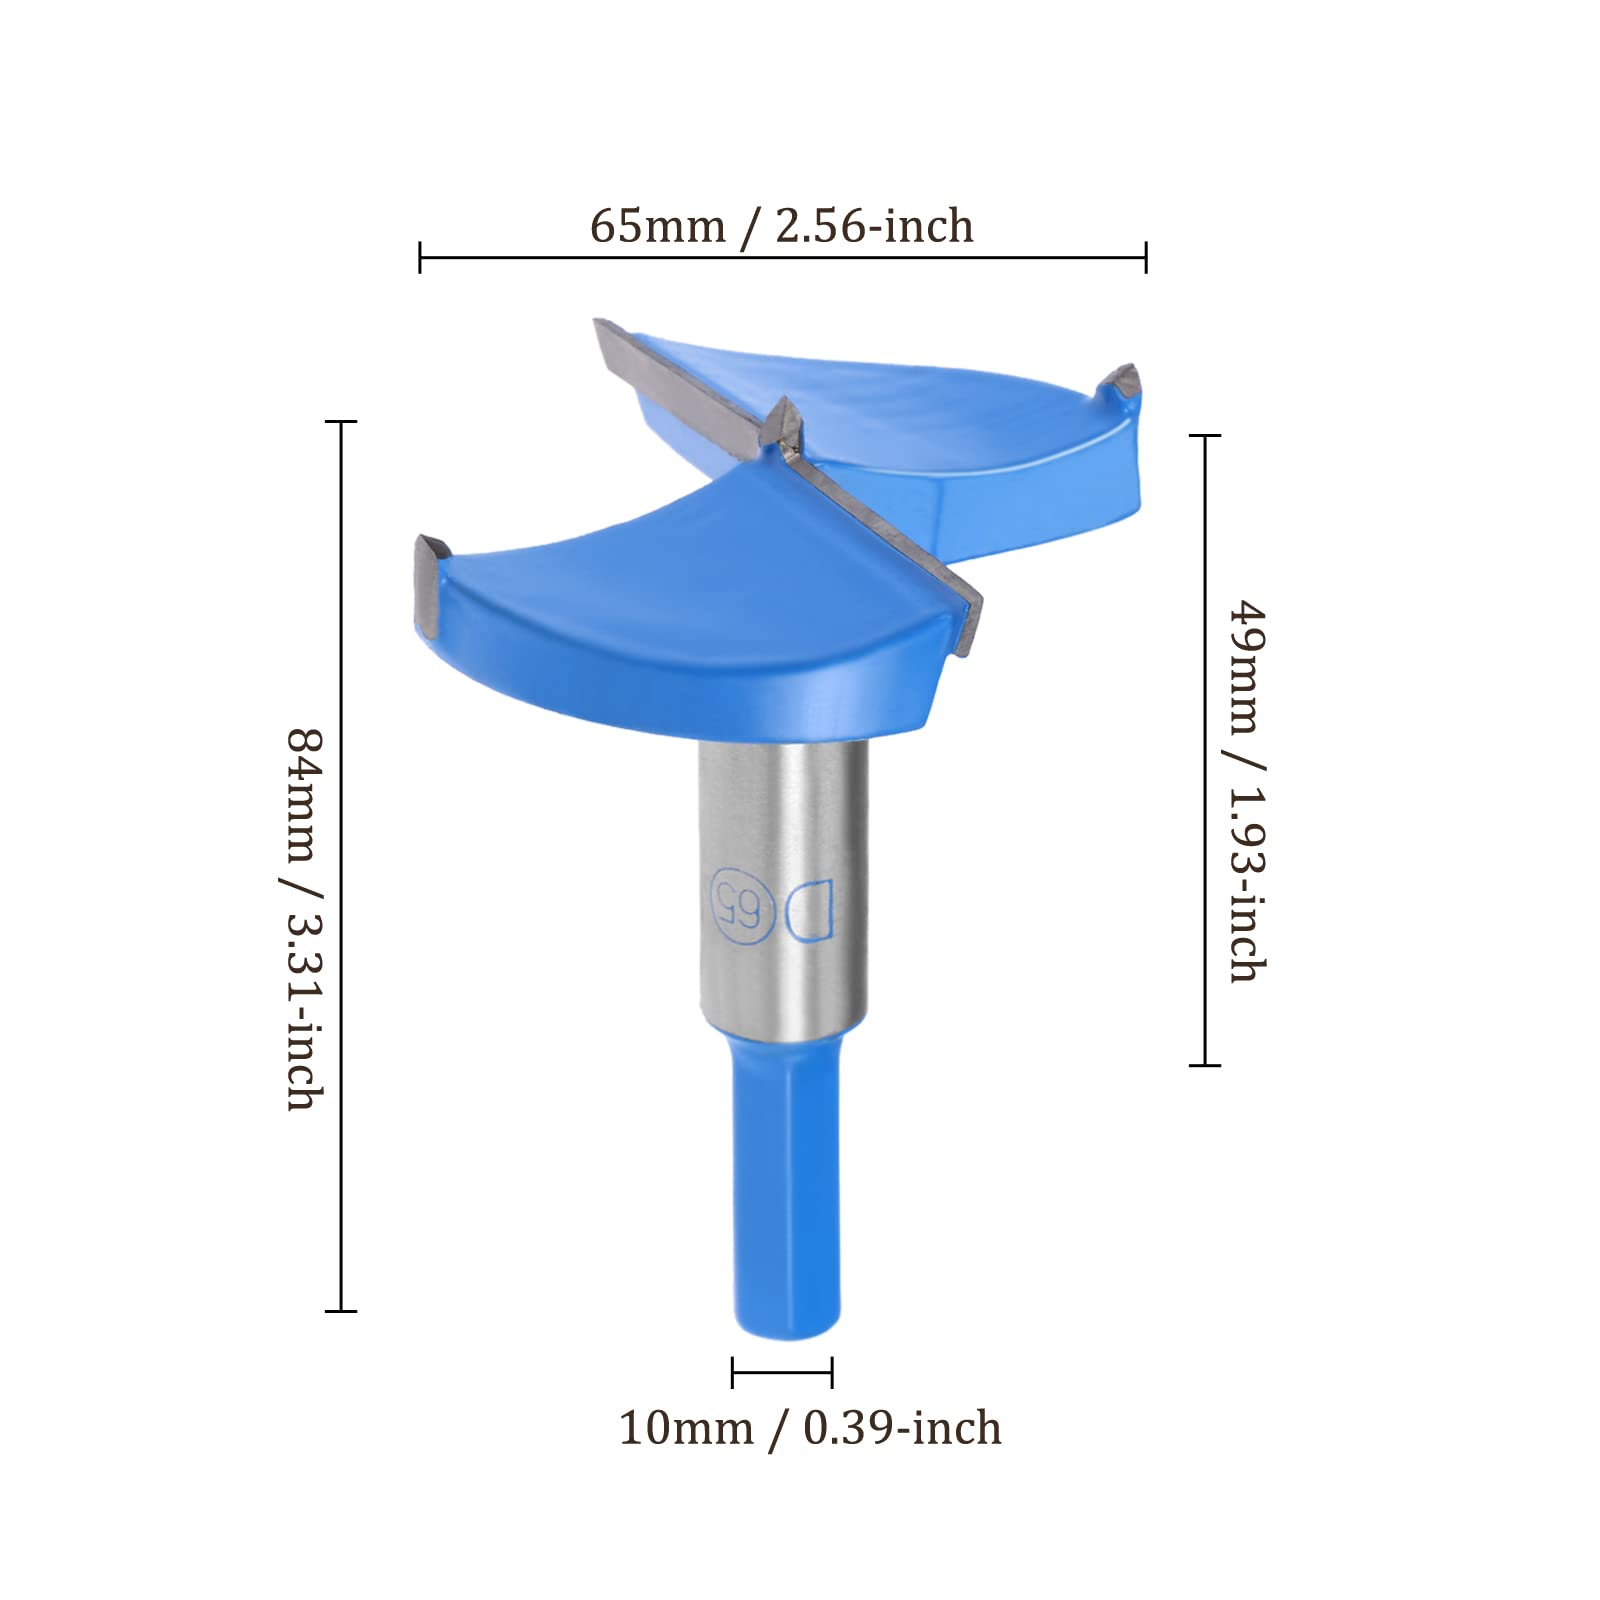 Kozelo Forstner Drill Bit - [65mm] Tungsten Carbide Auger Opener for Wood Furniture Hinge Woodworking Use, Hex Shank, Dark Blue